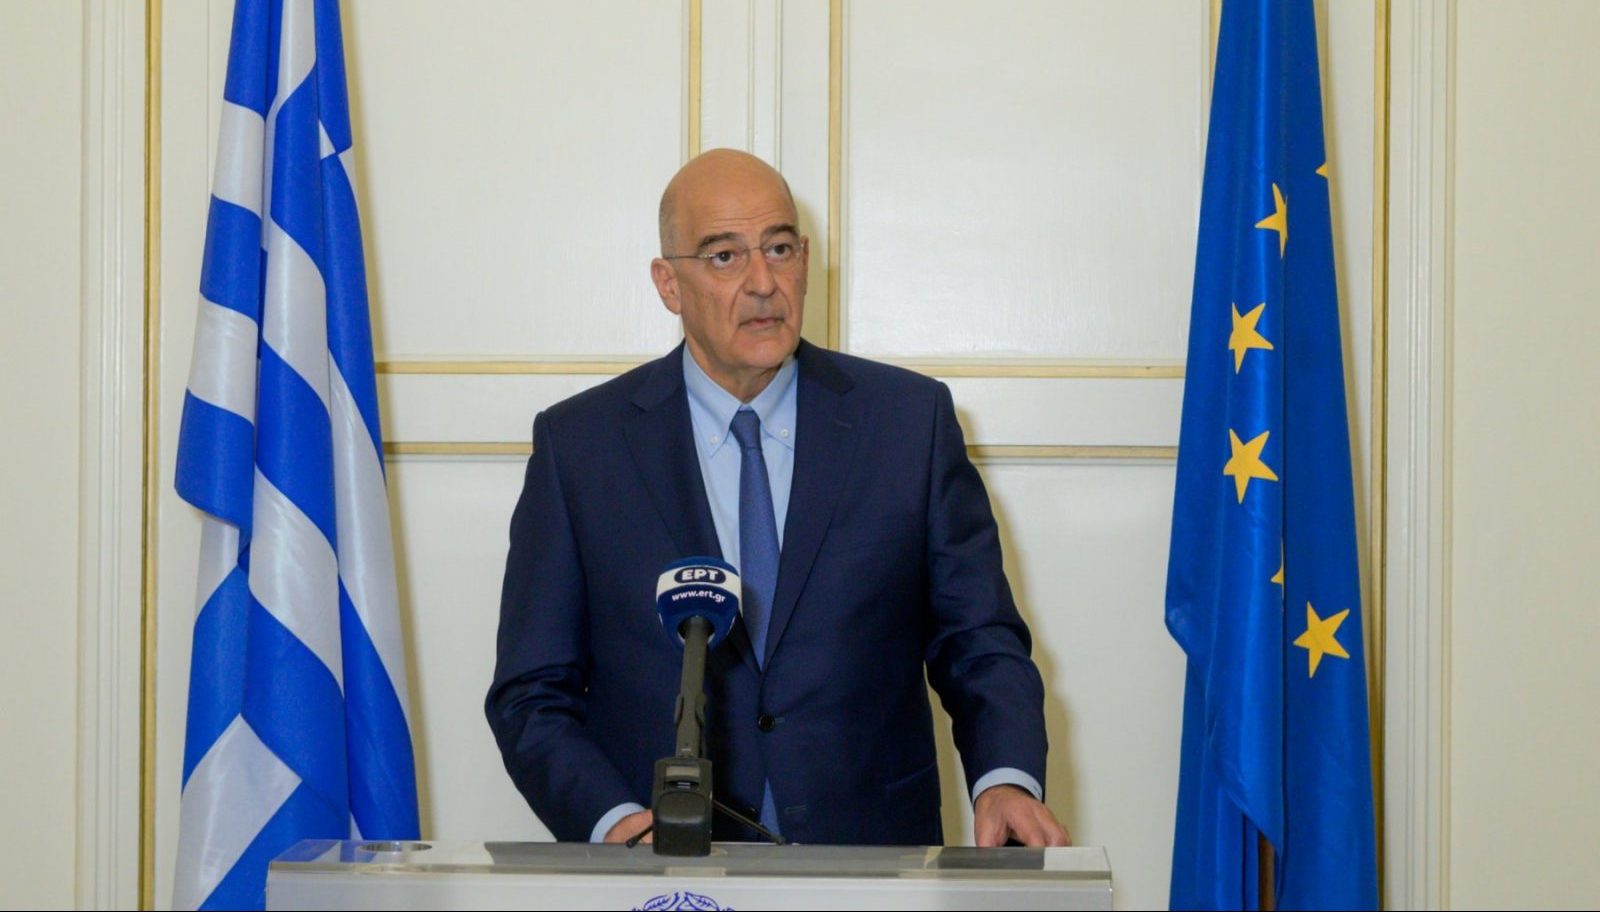 Ο υπουργός Εξωτερικών της Ελλάδας θέλει να ηγηθεί αποστολής ανθρωπιστικής βοήθειας στη Μαριούπολη, όπου κατοικεί μια κοινότητα χιλιάδων Ελλήνων